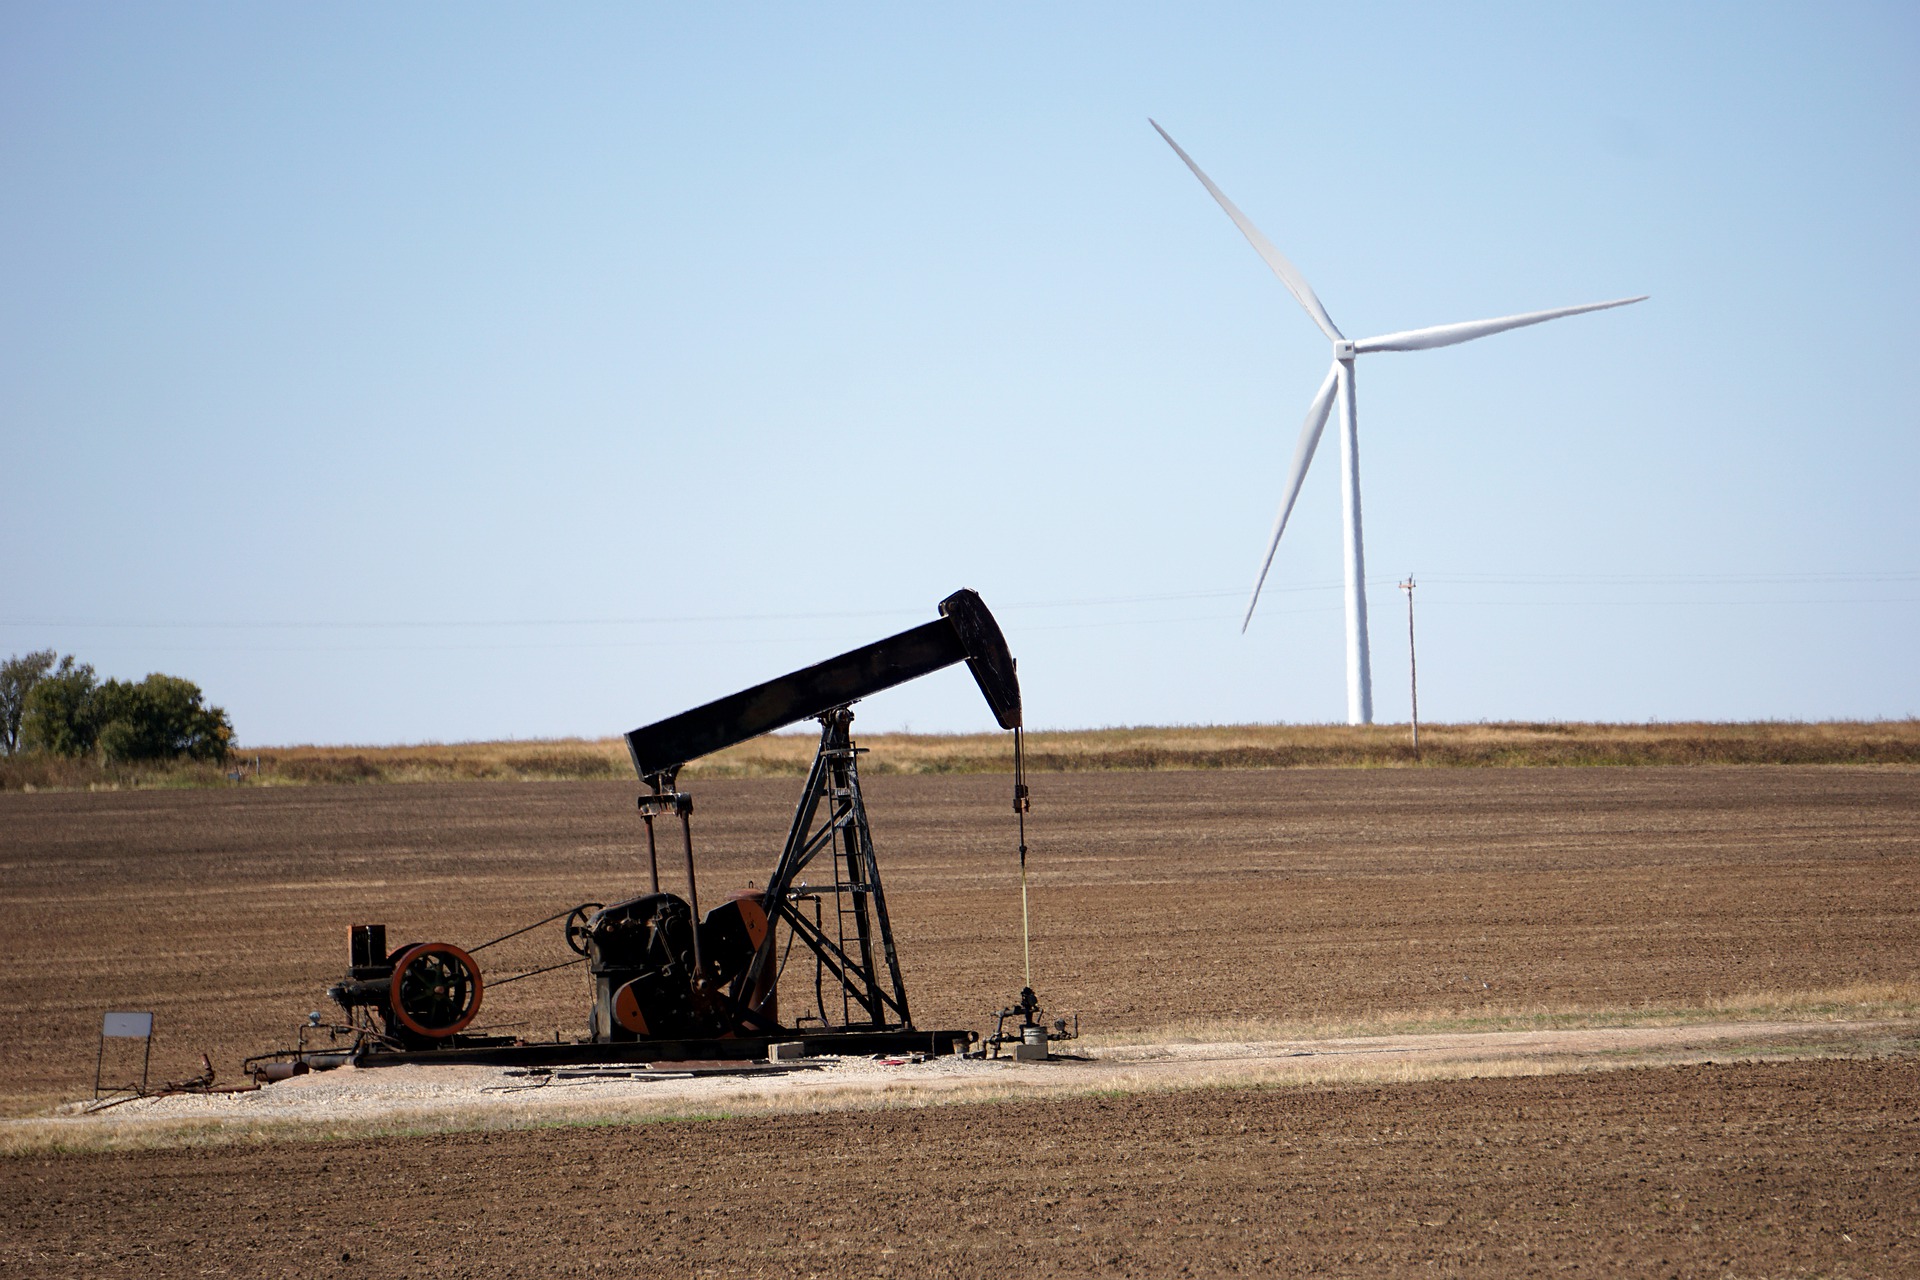 HSBC promete restringir capital para petróleo, não para transição. Na imagem: Cavalo-de-pau, bomba mecânica para extração onshore de petróleo (Foto: Pixabay)